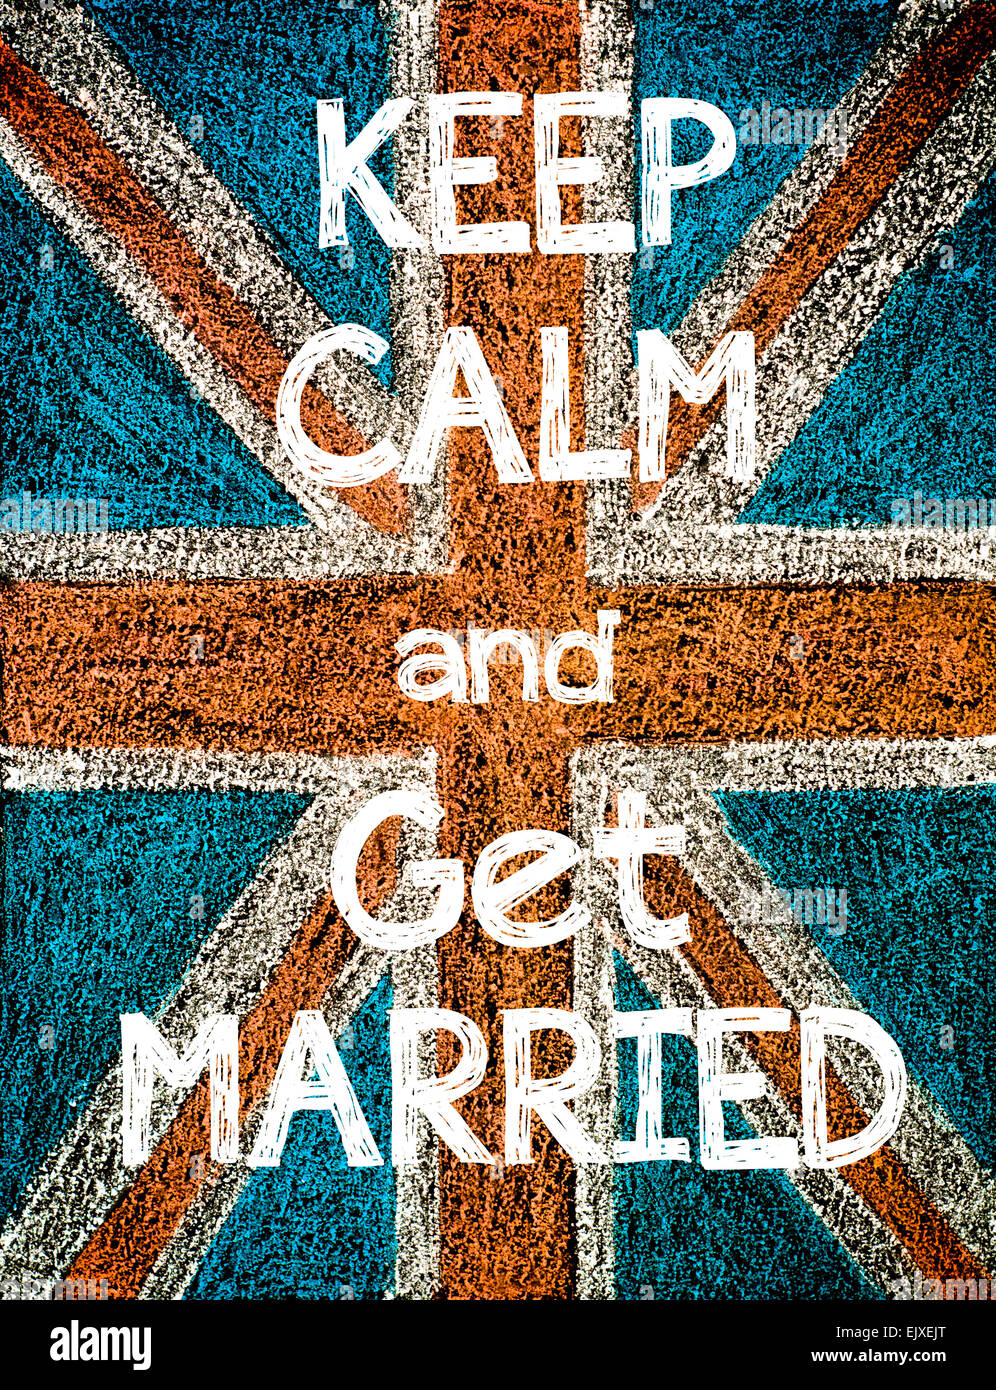 Mantener la calma y casarse. Reino Unido (British Union Jack) bandera, vintage de dibujo a mano alzada con tiza en el pizarrón, humor imagen concepto Foto de stock